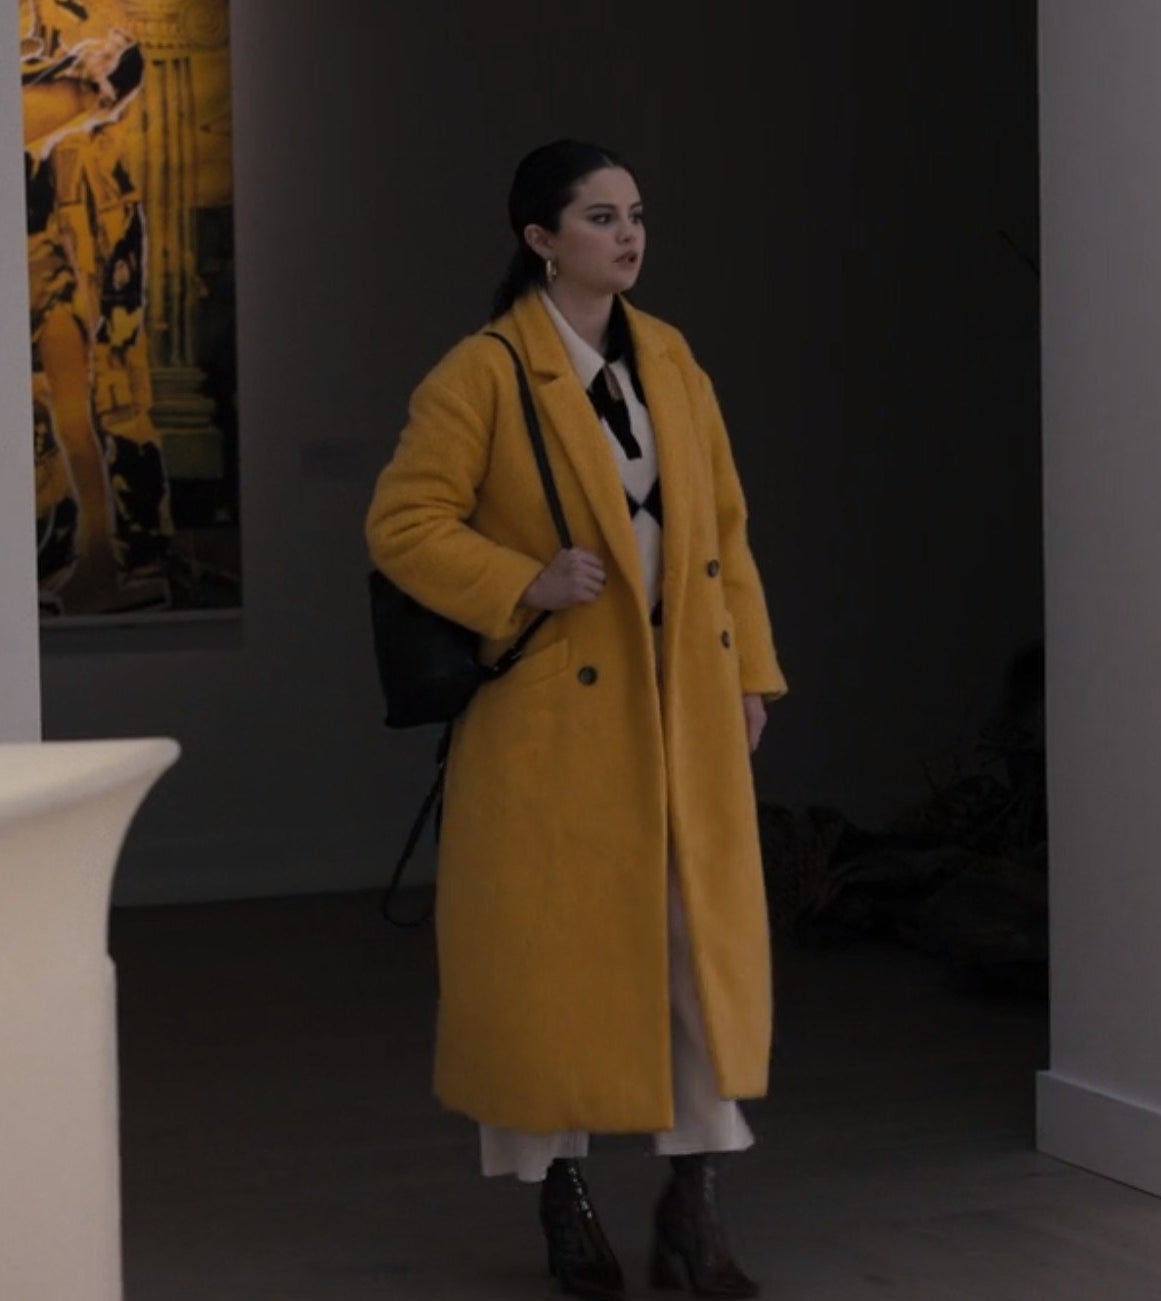 Mabel walking in an art gallery in a yellow coat